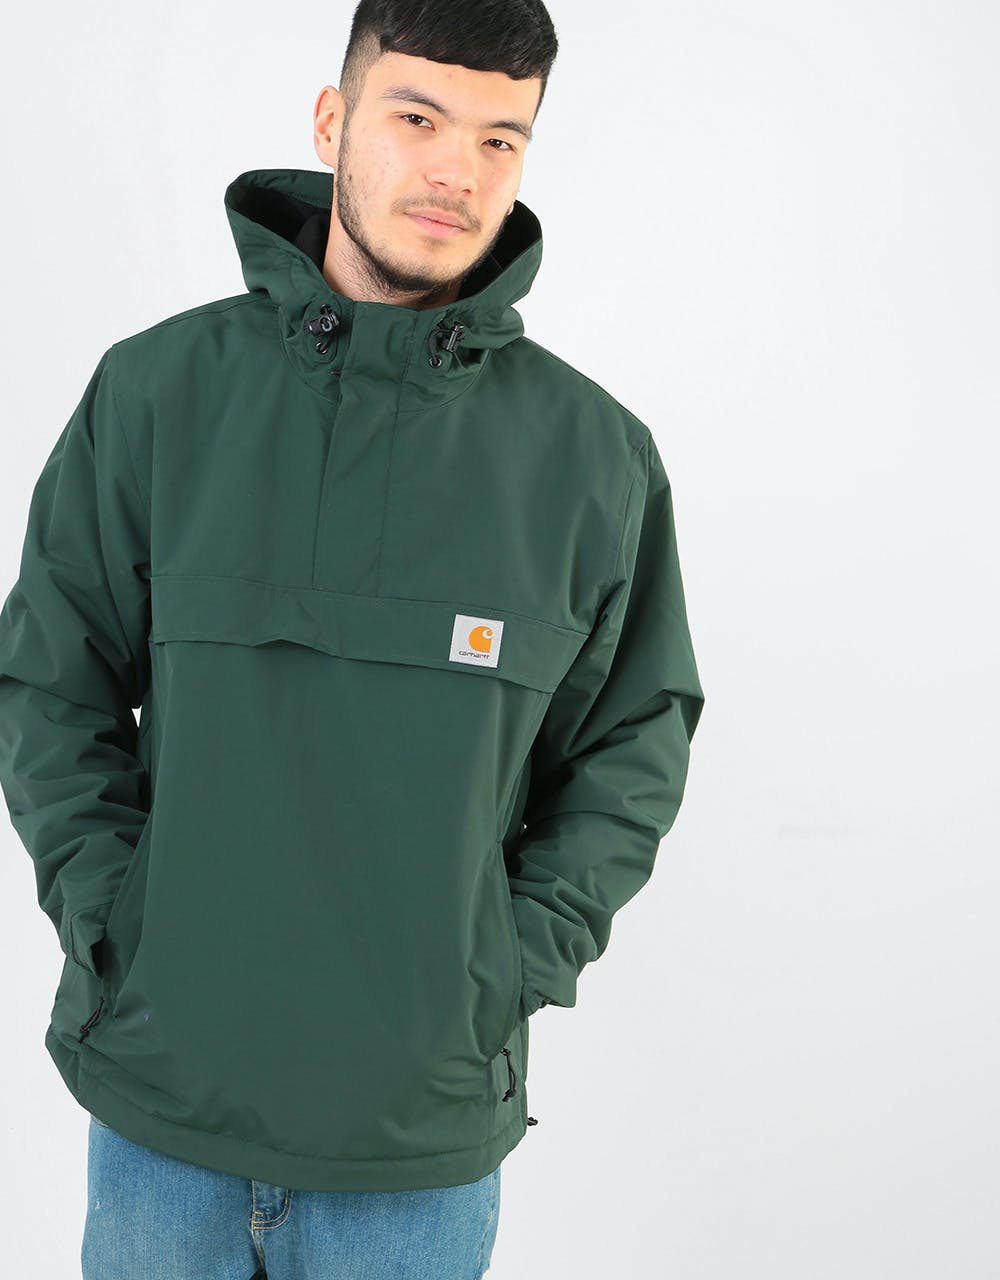 Carhartt WIP Nimbus Pullover Jacket - Loden